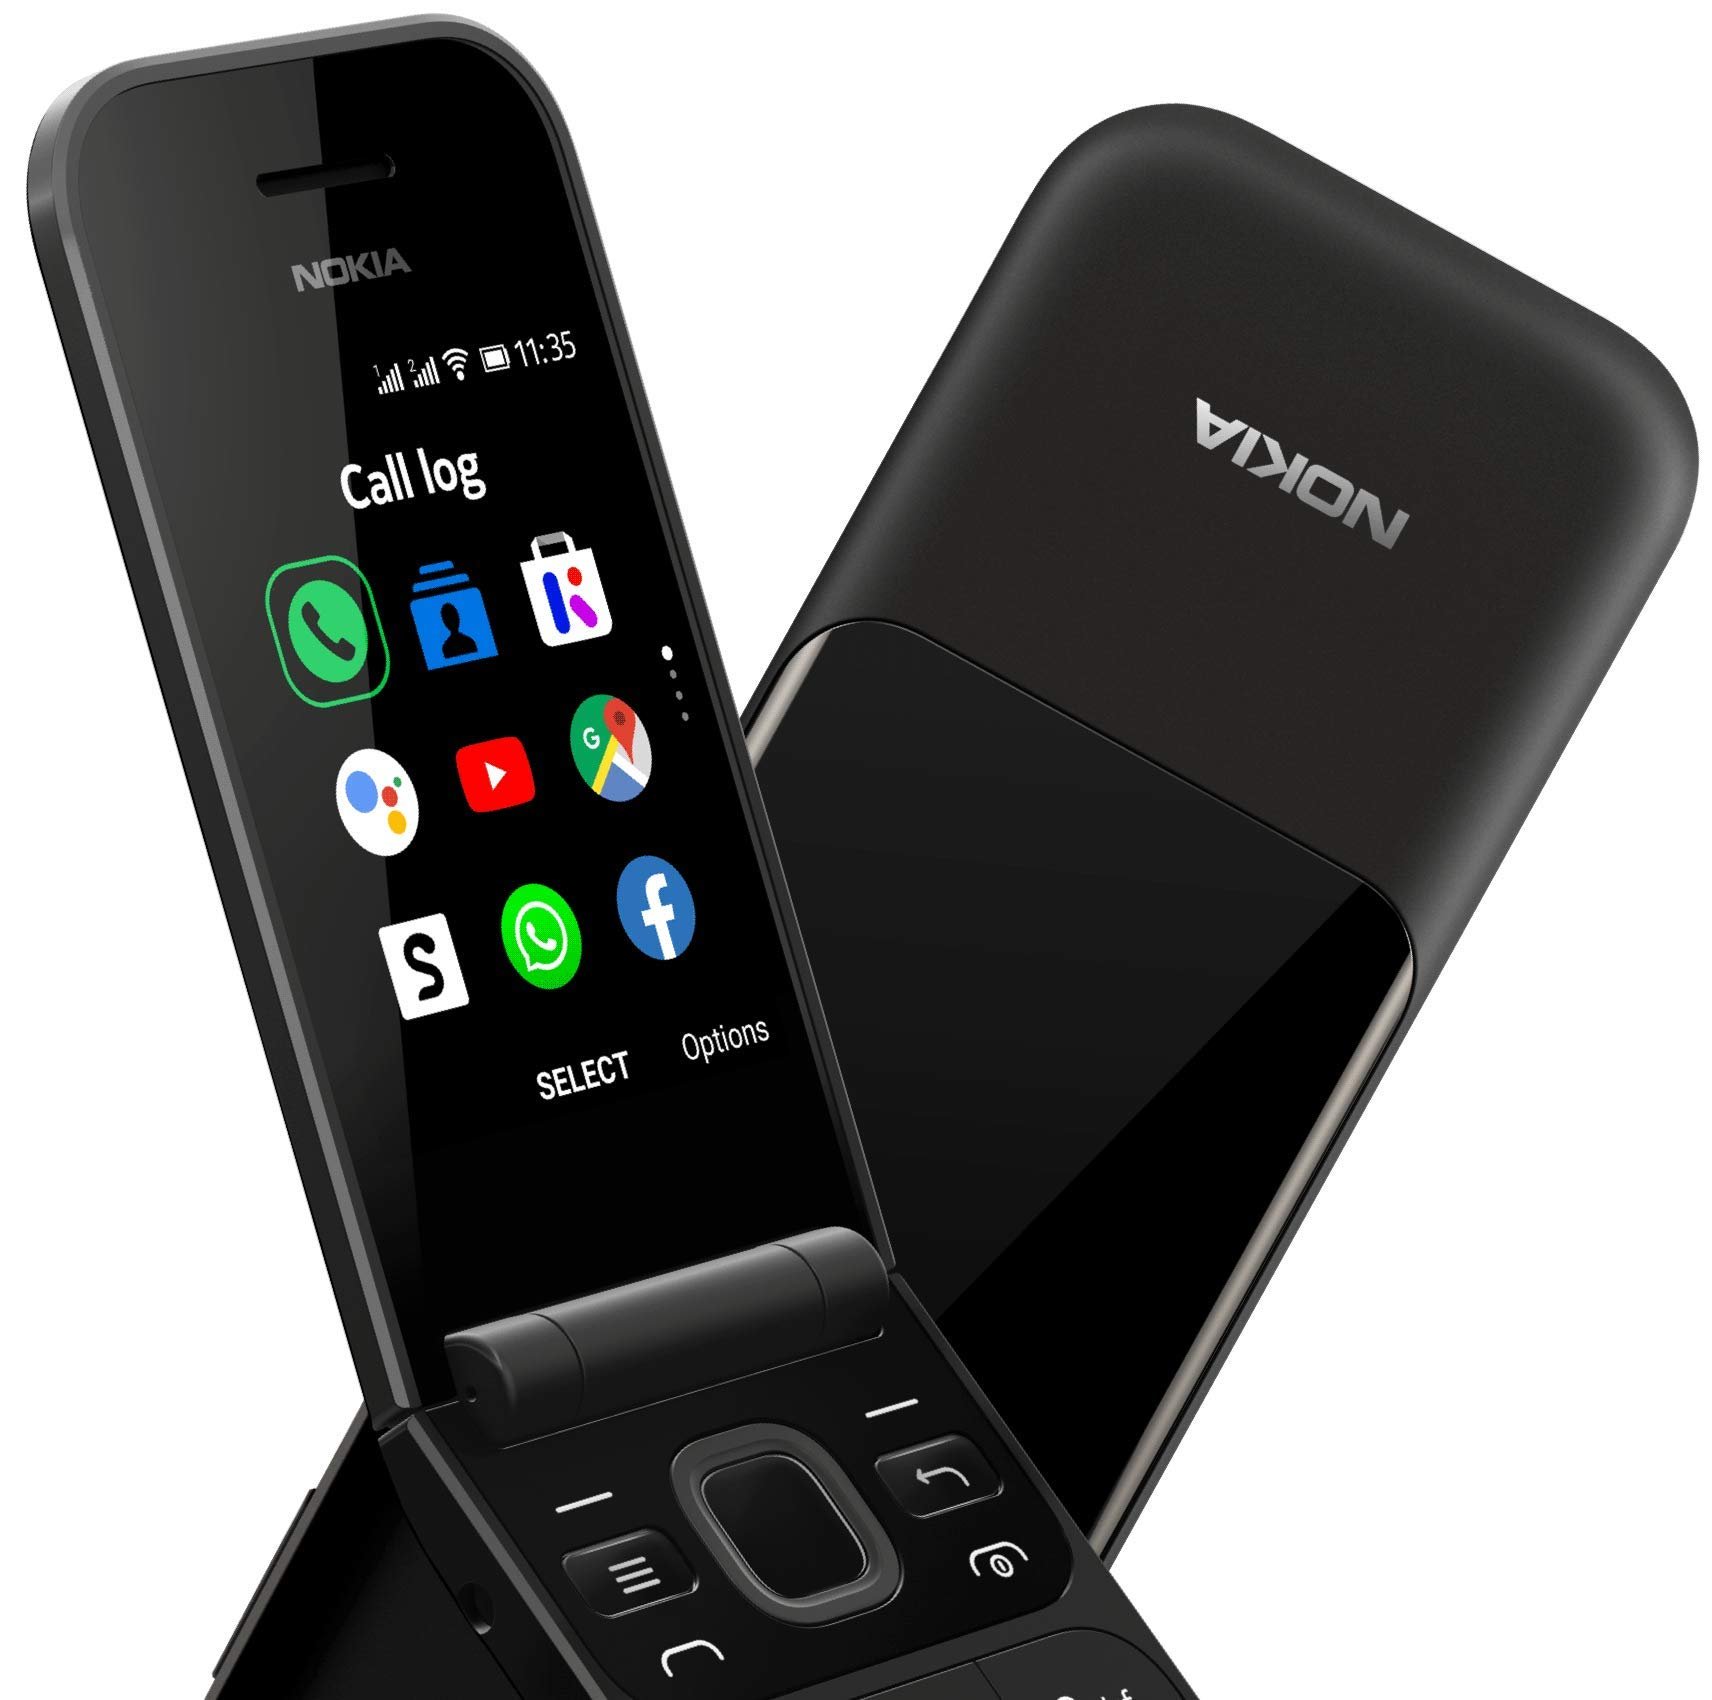 Nokia 2720, un smartphone tipo almeja es lanzado en China